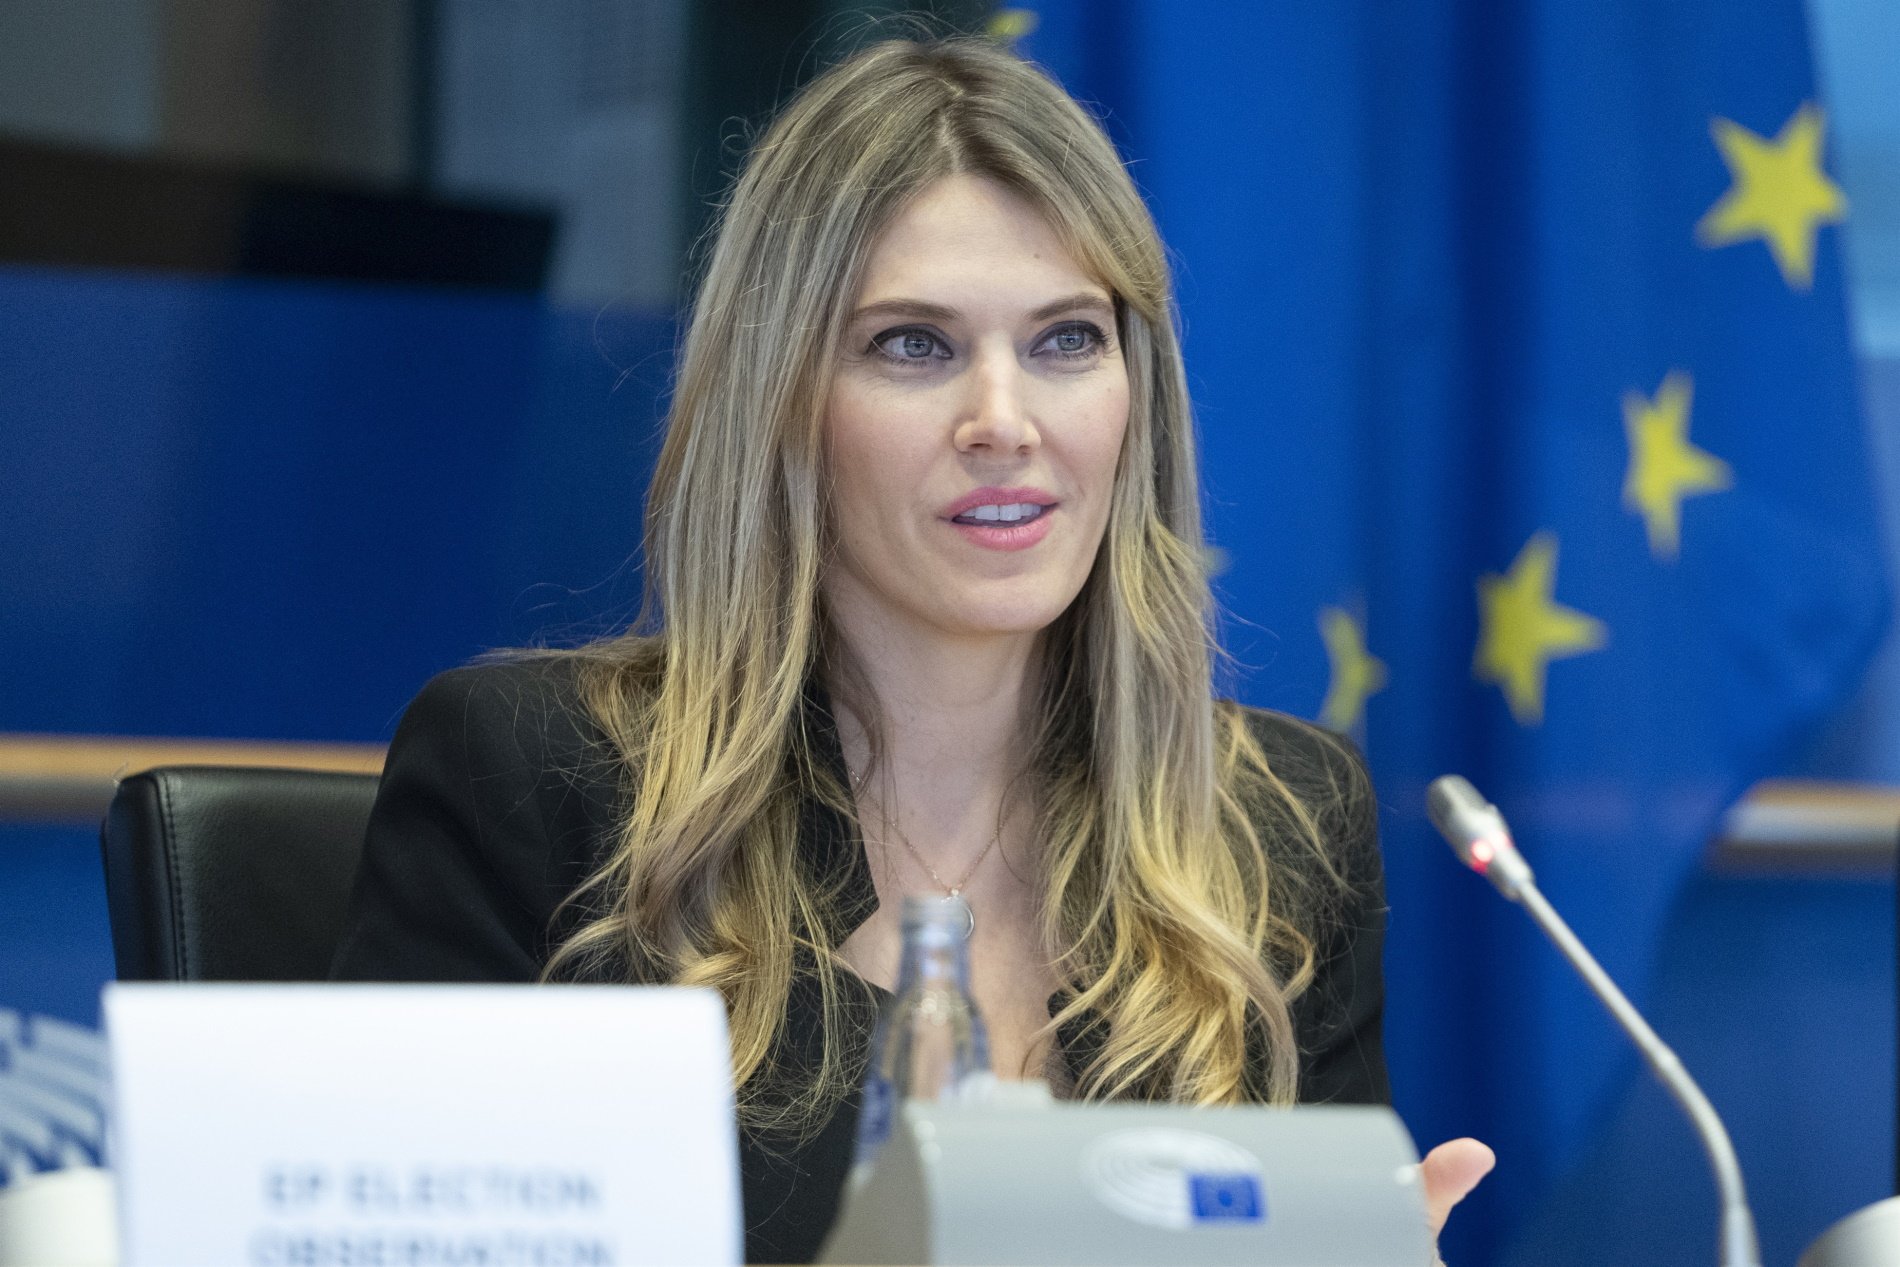 L'exvicepresidenta del Parlament Europeu Eva Kaili acusa Espanya d'haver espiat el Comitè Pegasus